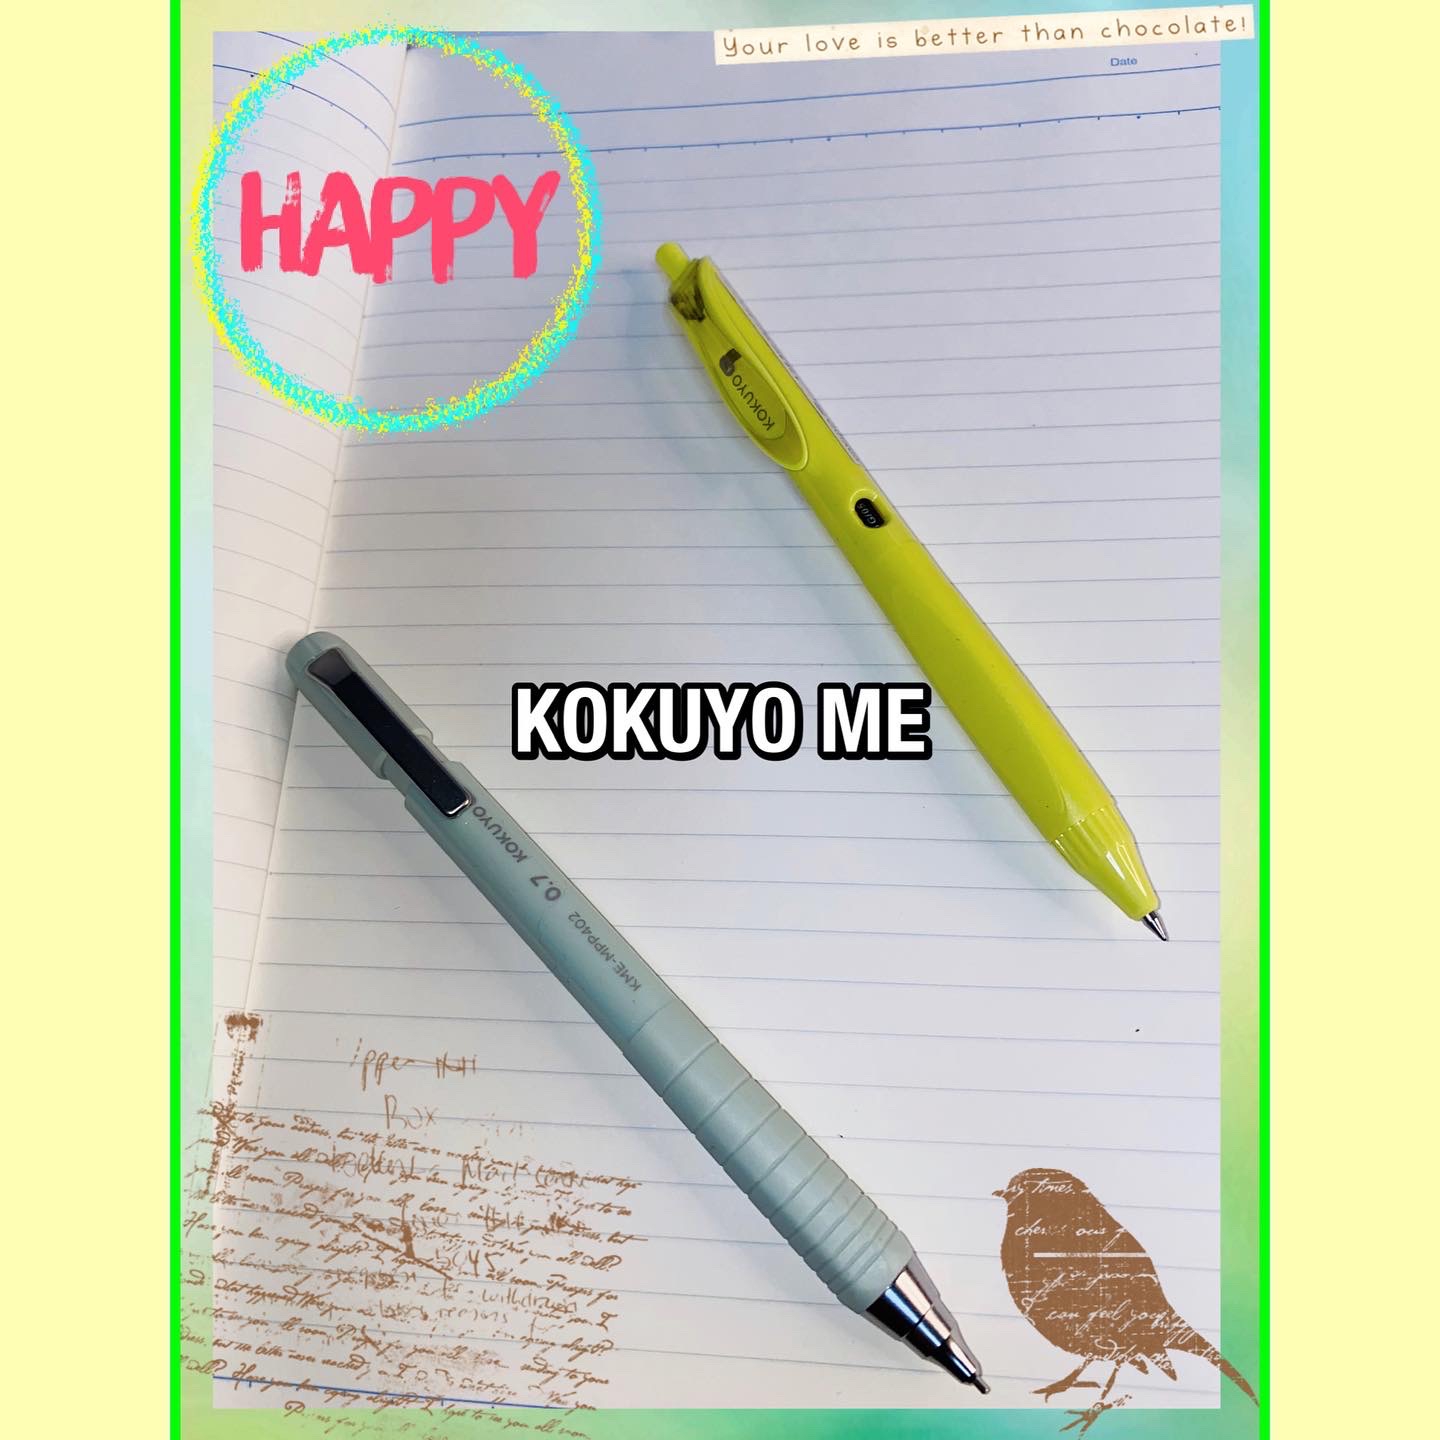 KOKUYO  MEボールペンシャープペンを使ったマイピコブーさんのクチコミ画像2